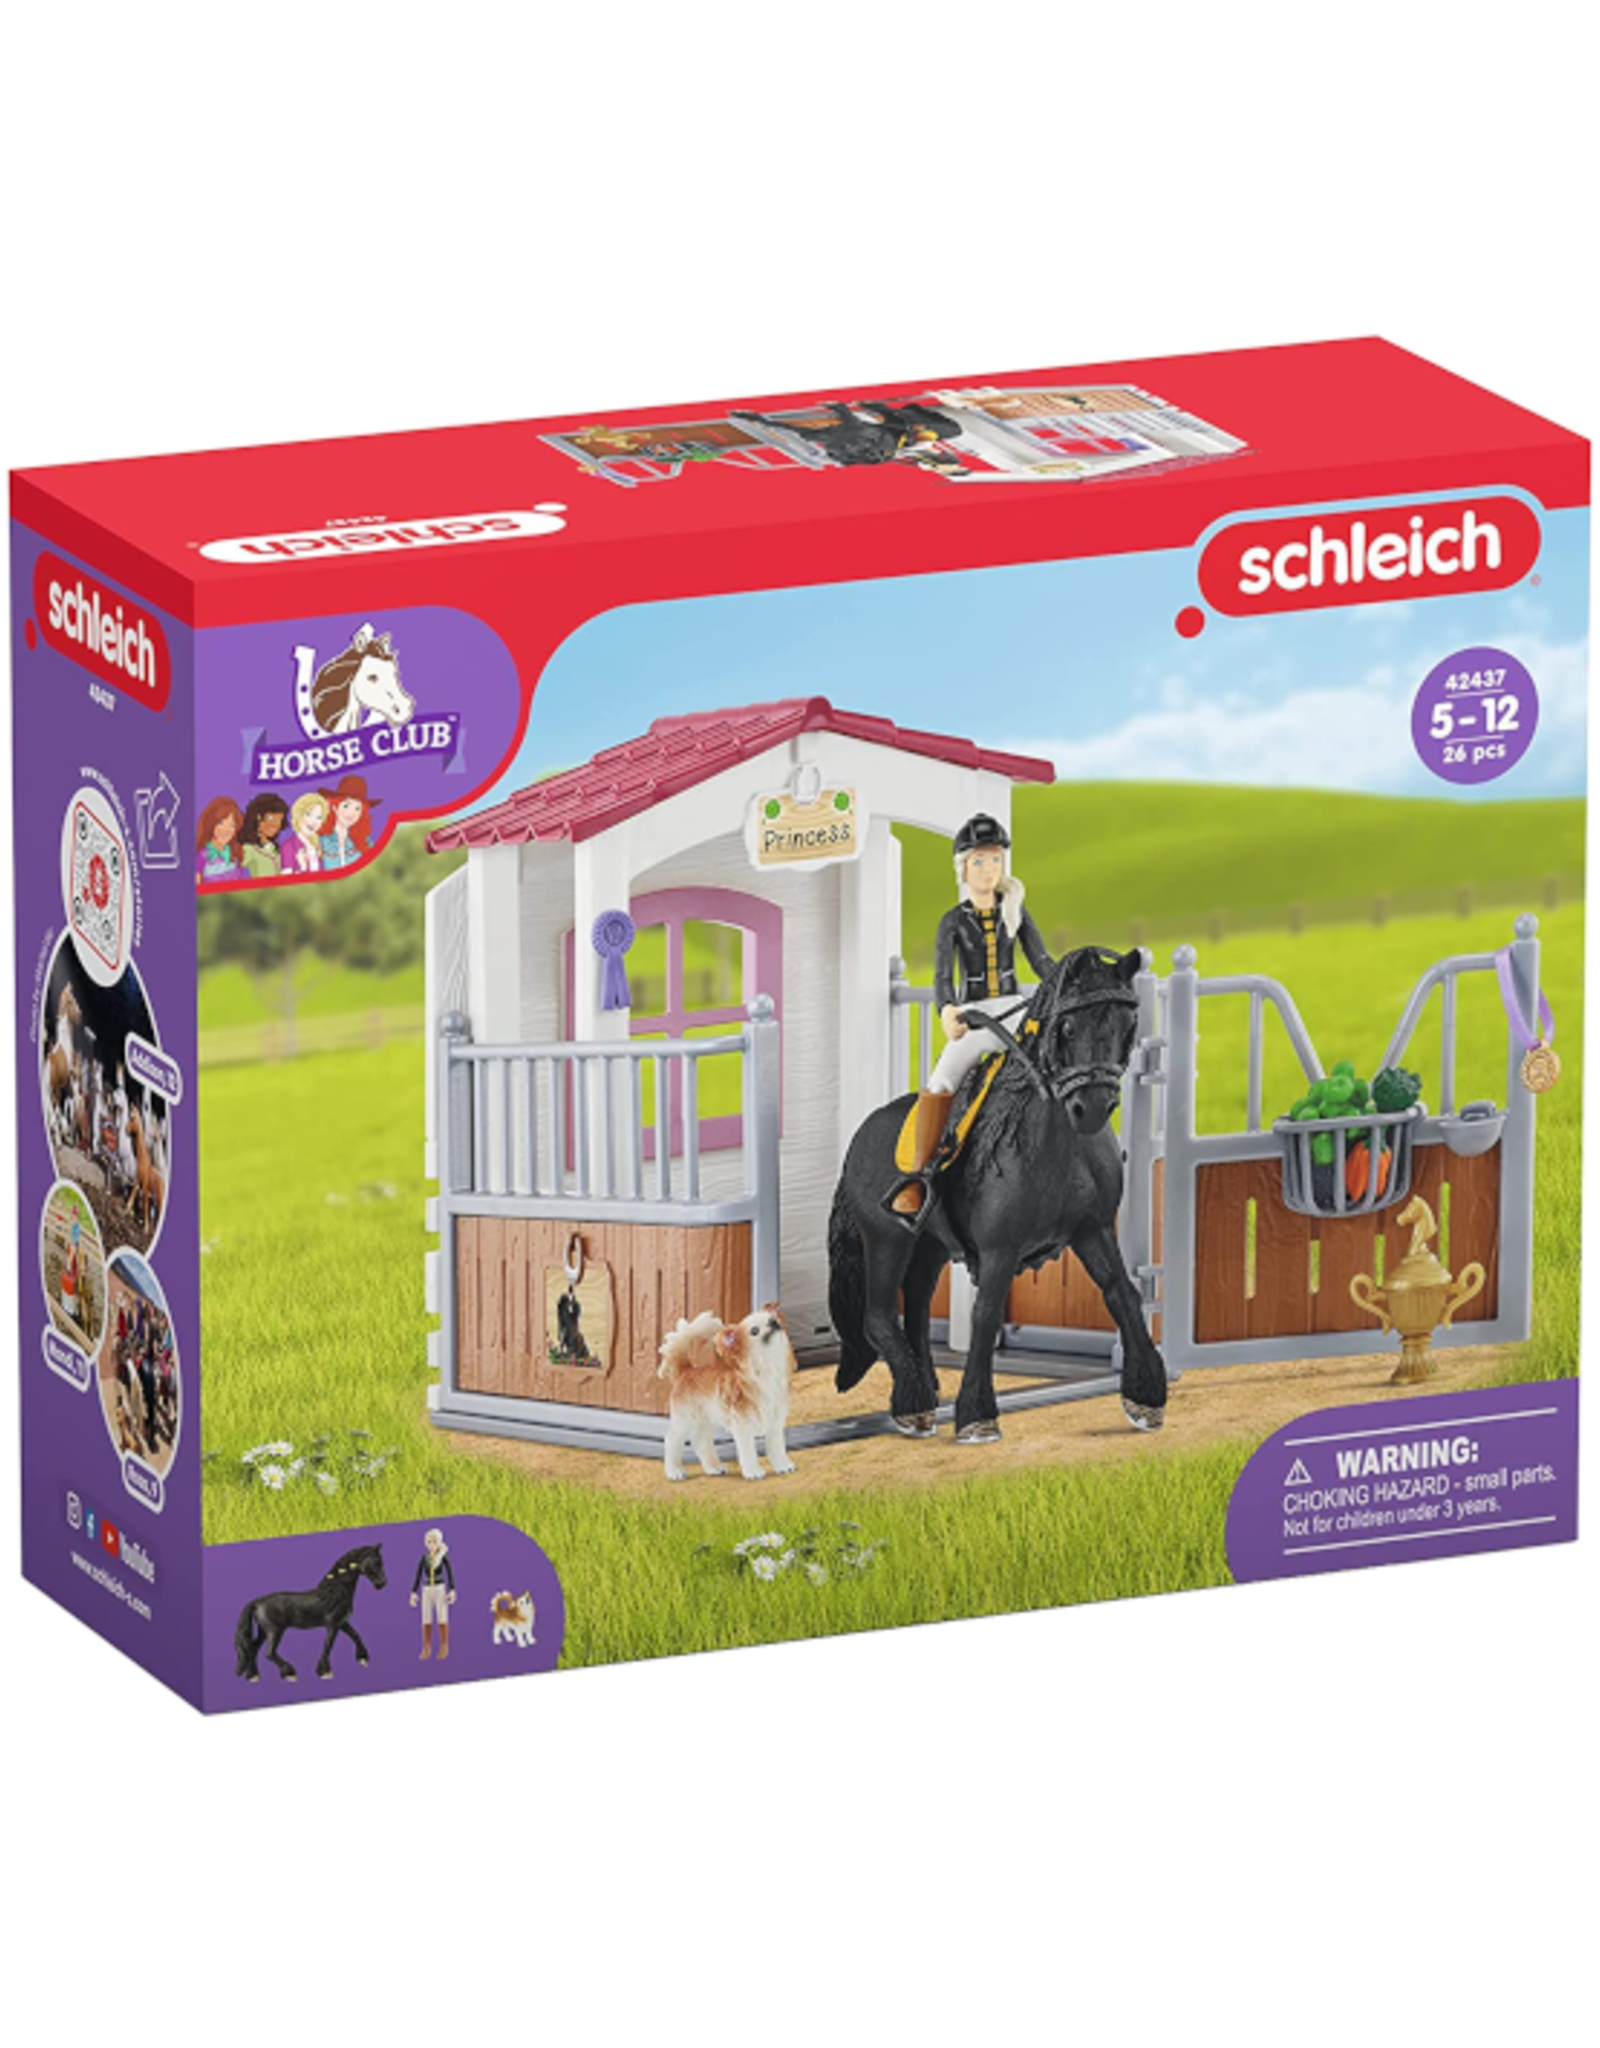 Schleich 42437 HorseBox HorseClub Tori & Princess - Schleich